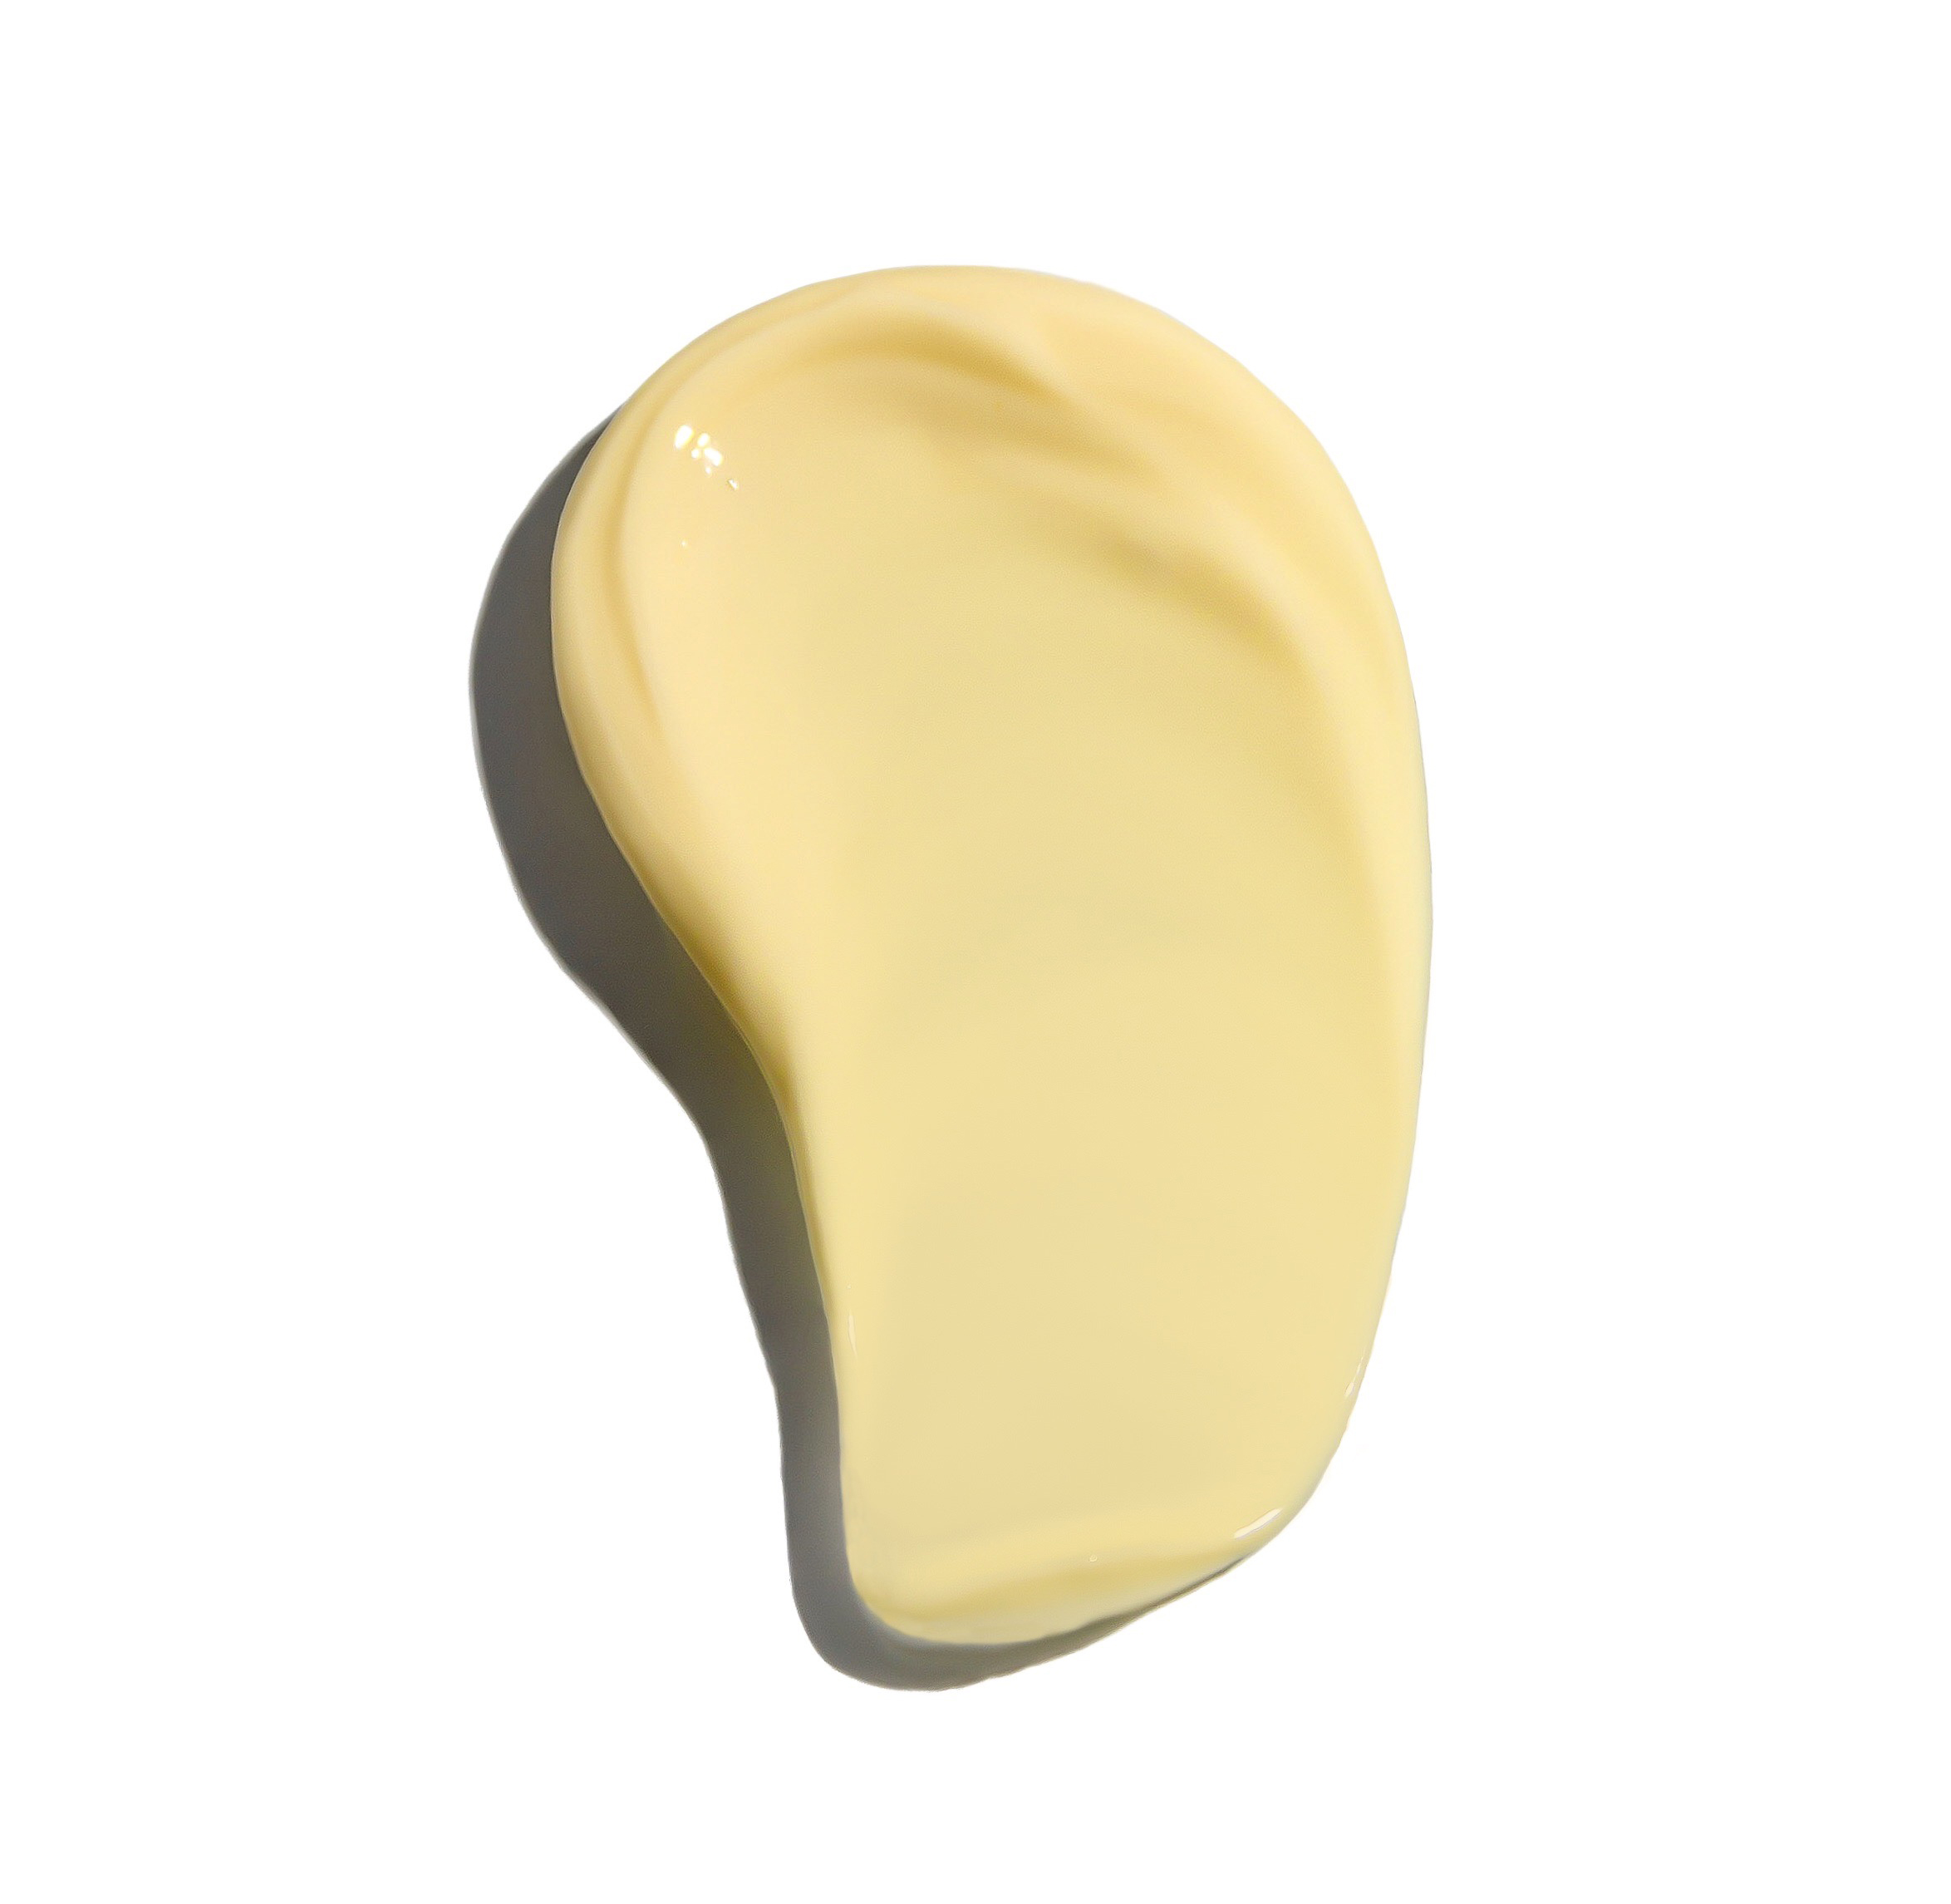 Detox Cream Нічний регенеруючий крем з пілінг-ефектом  тестер